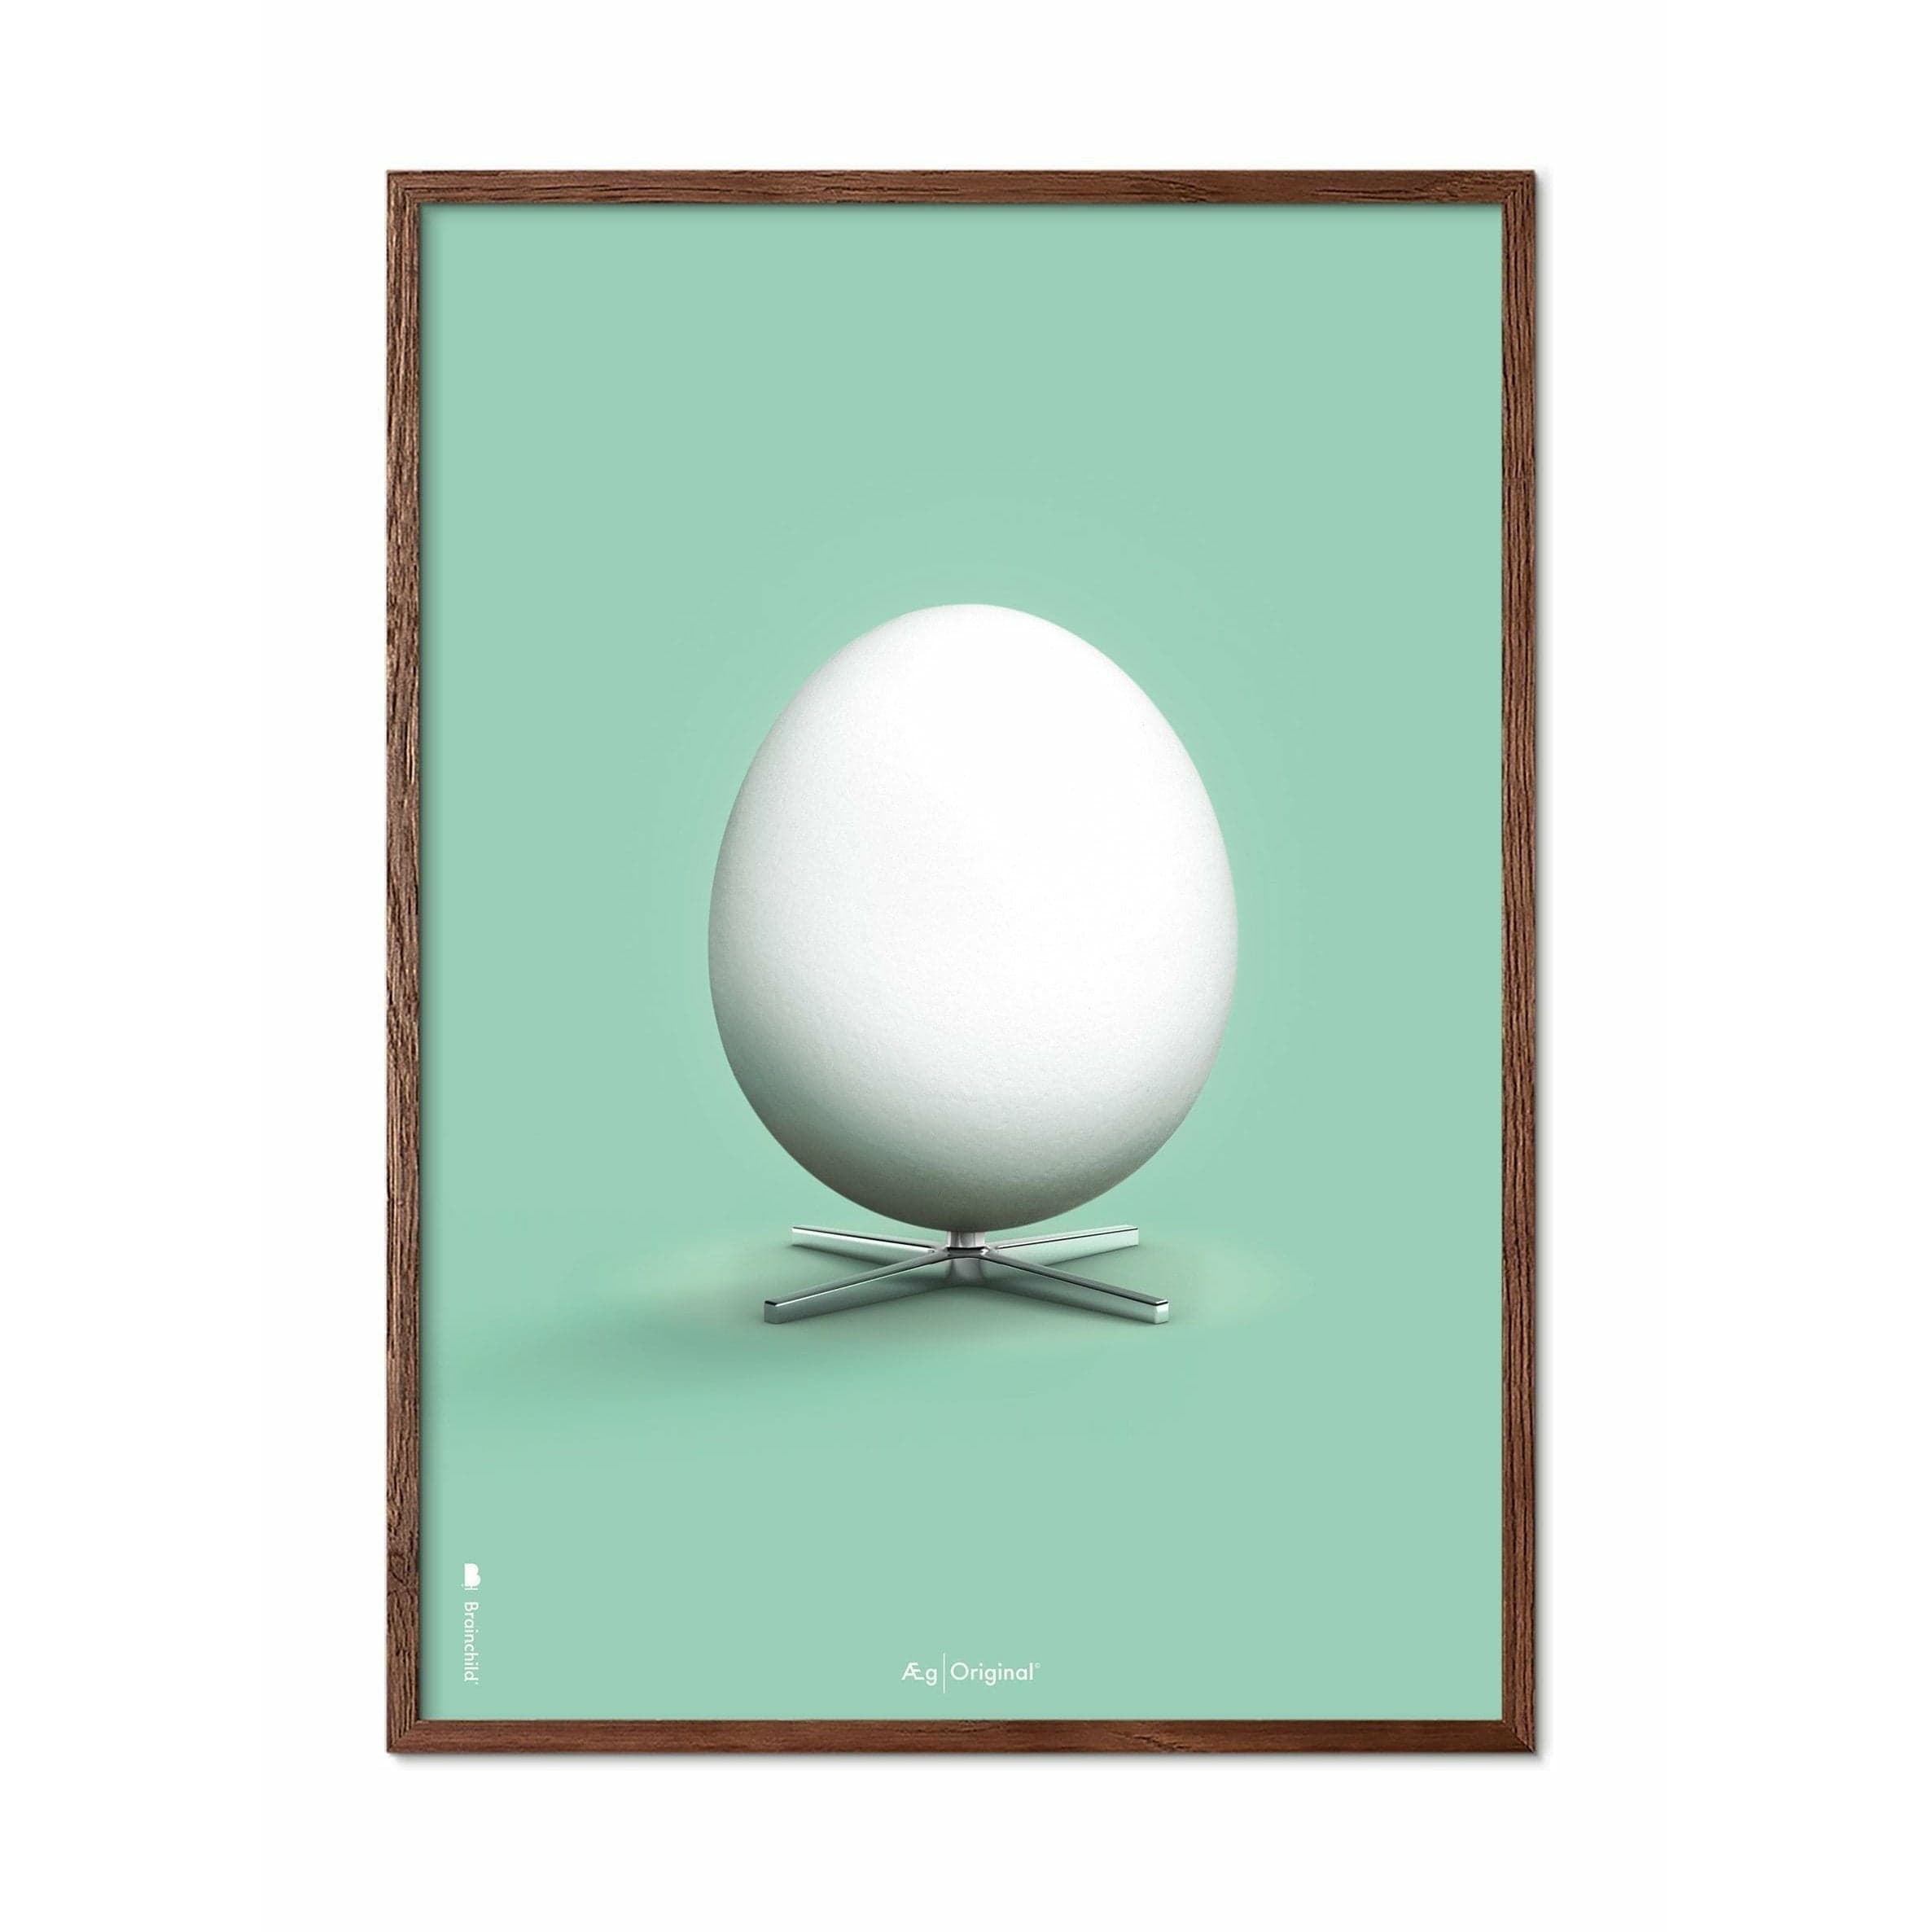 创意鸡蛋经典海报，由深木50x70厘米制成的框架，薄荷绿色背景